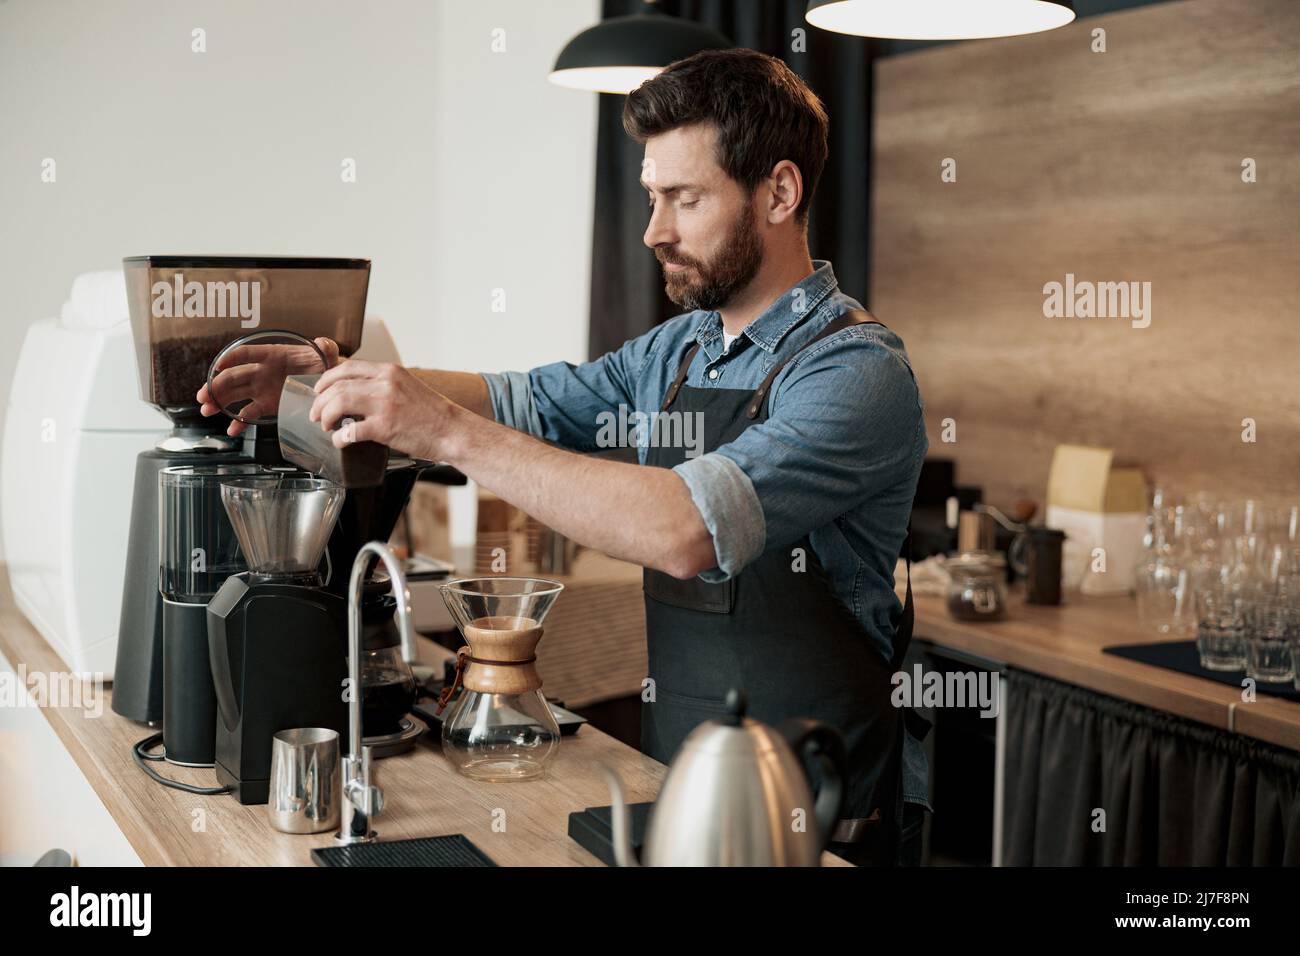 Le beau barista moud les grains de café dans la cafetière Banque D'Images